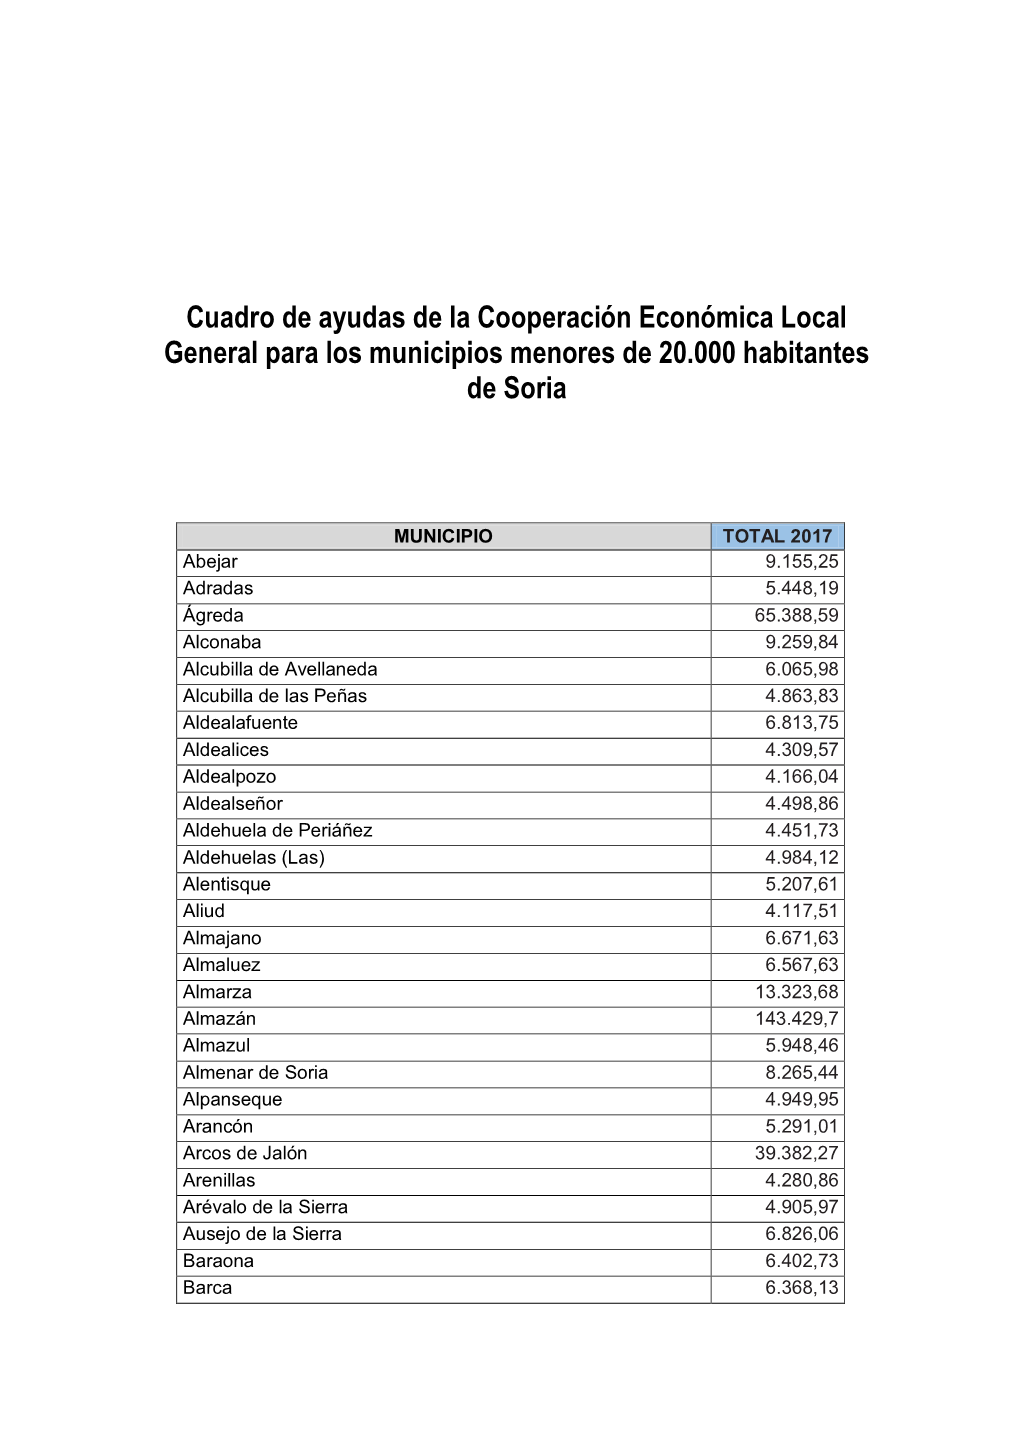 Cuadro De Ayudas De La Cooperación Económica Local General Para Los Municipios Menores De 20.000 Habitantes De Soria